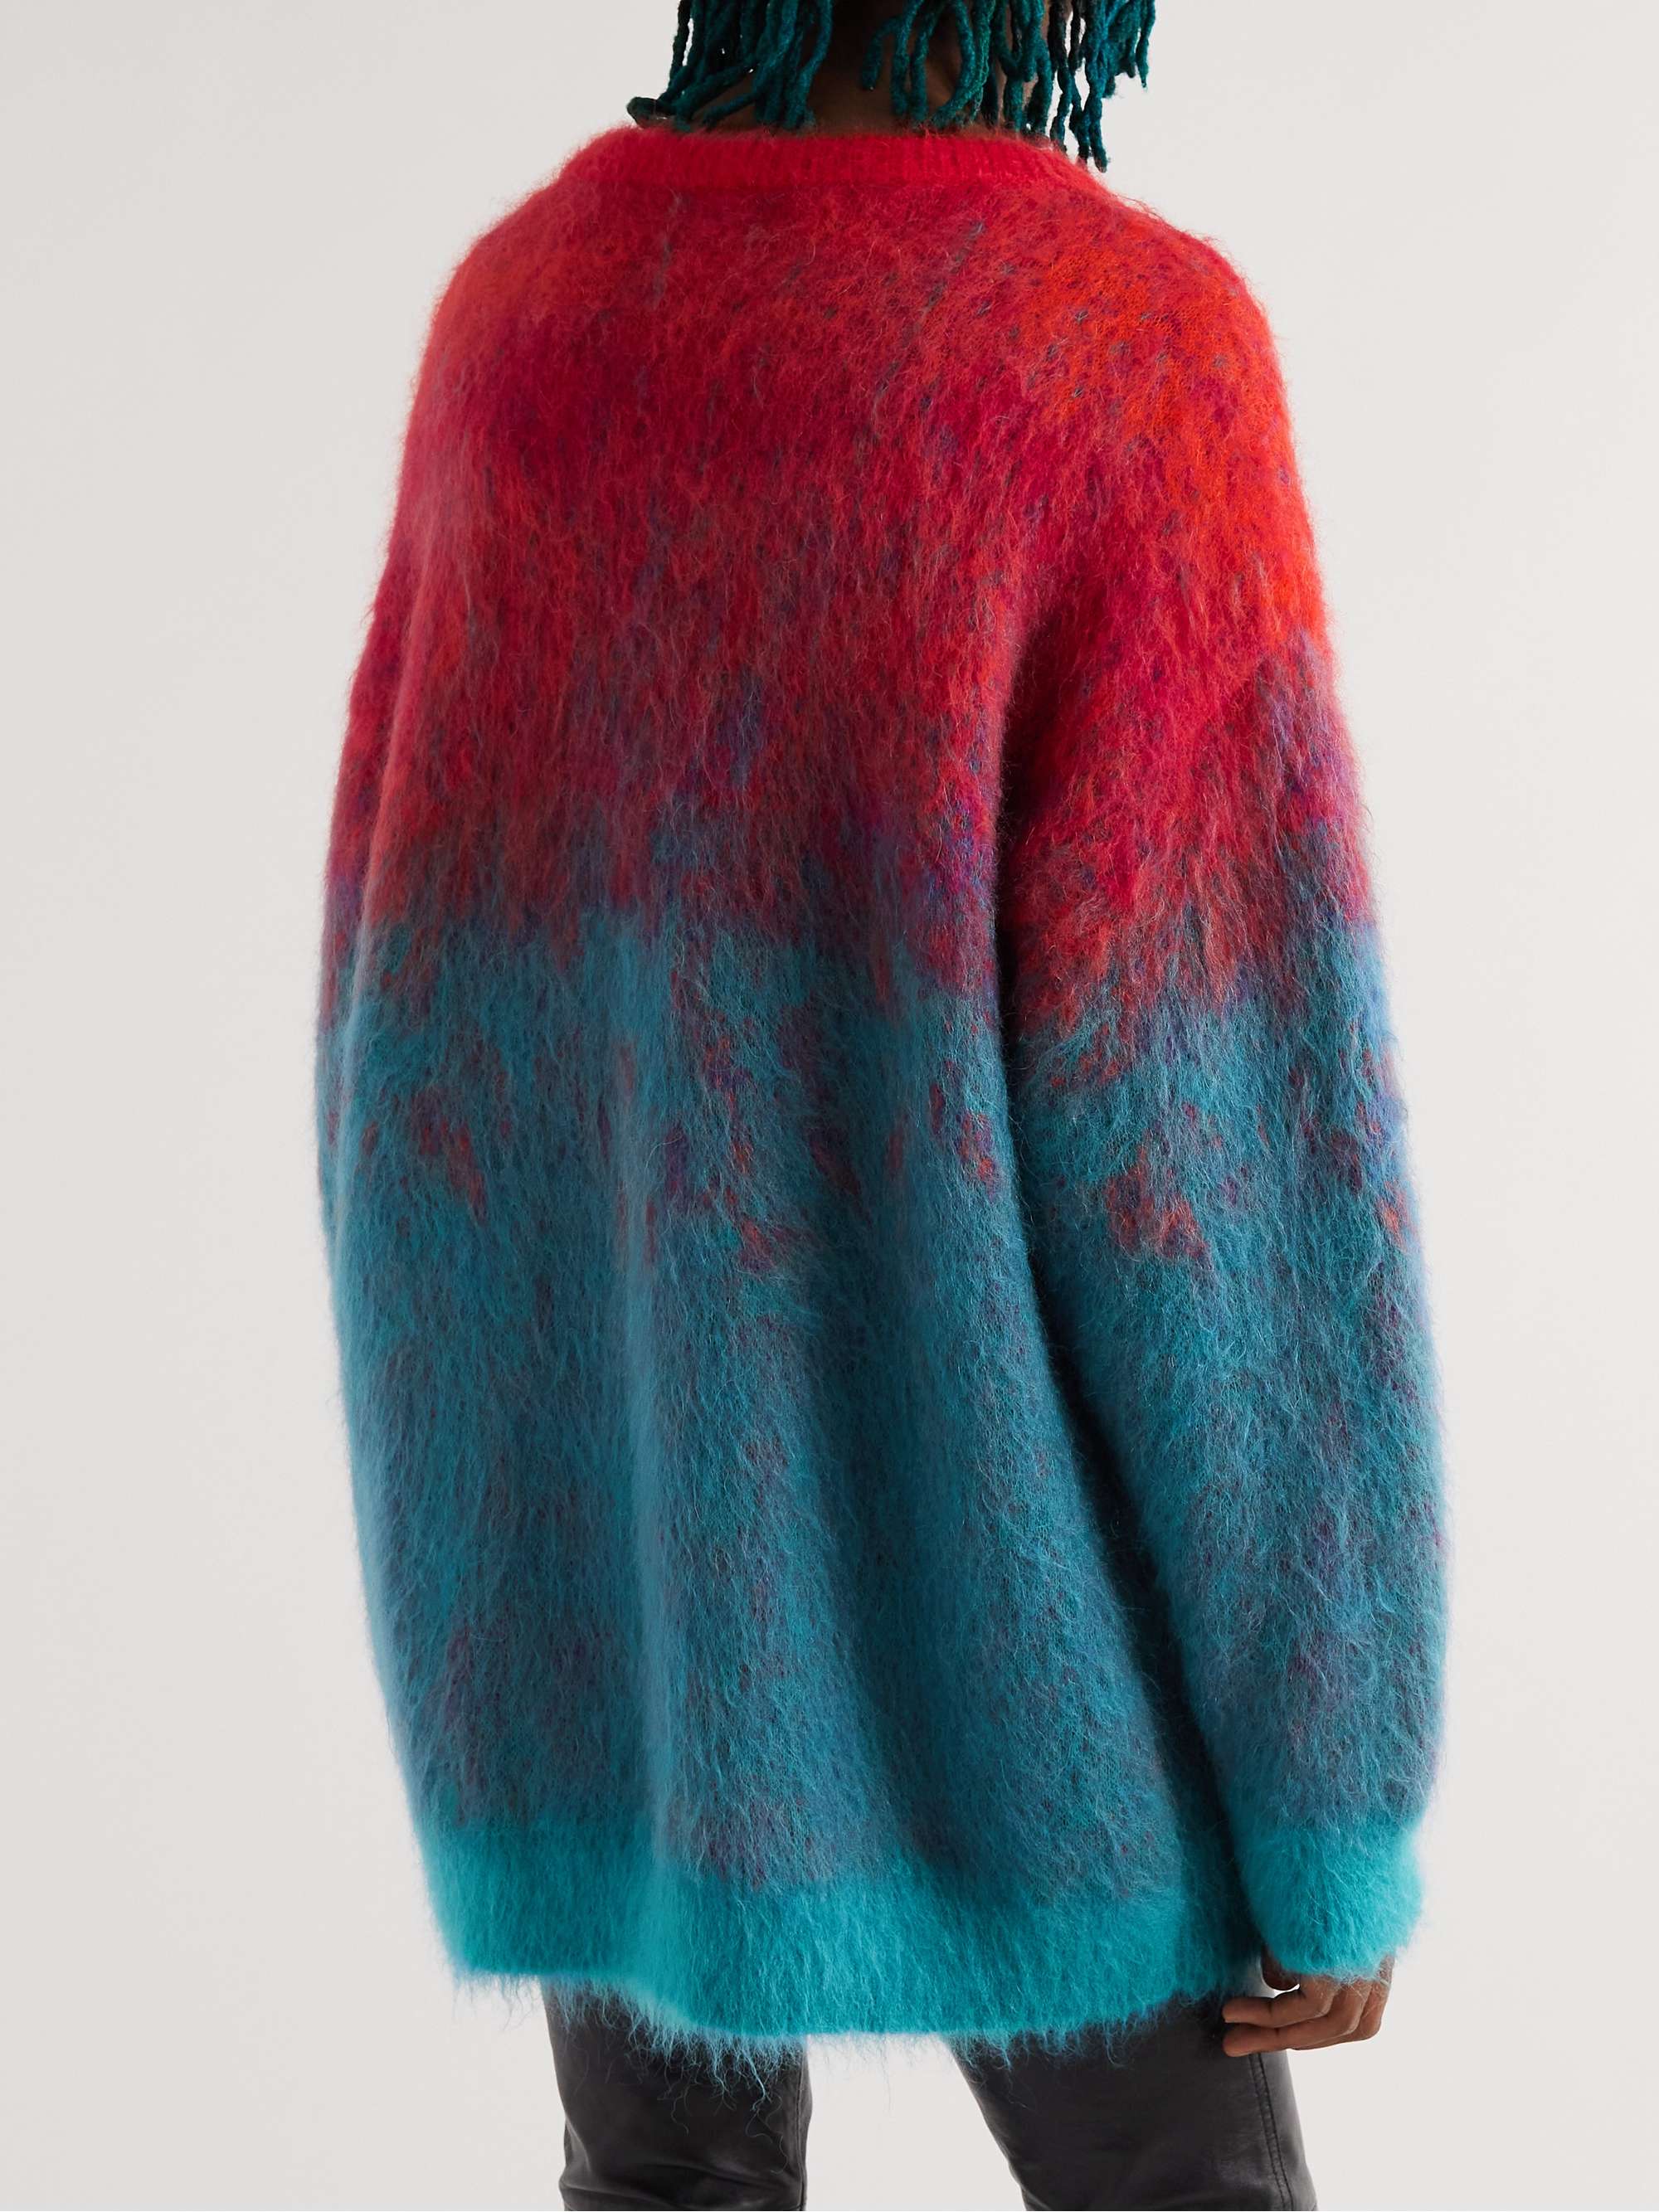 CELINE HOMME Embellished Appliquéd Dégradé Mohair-Blend Sweater